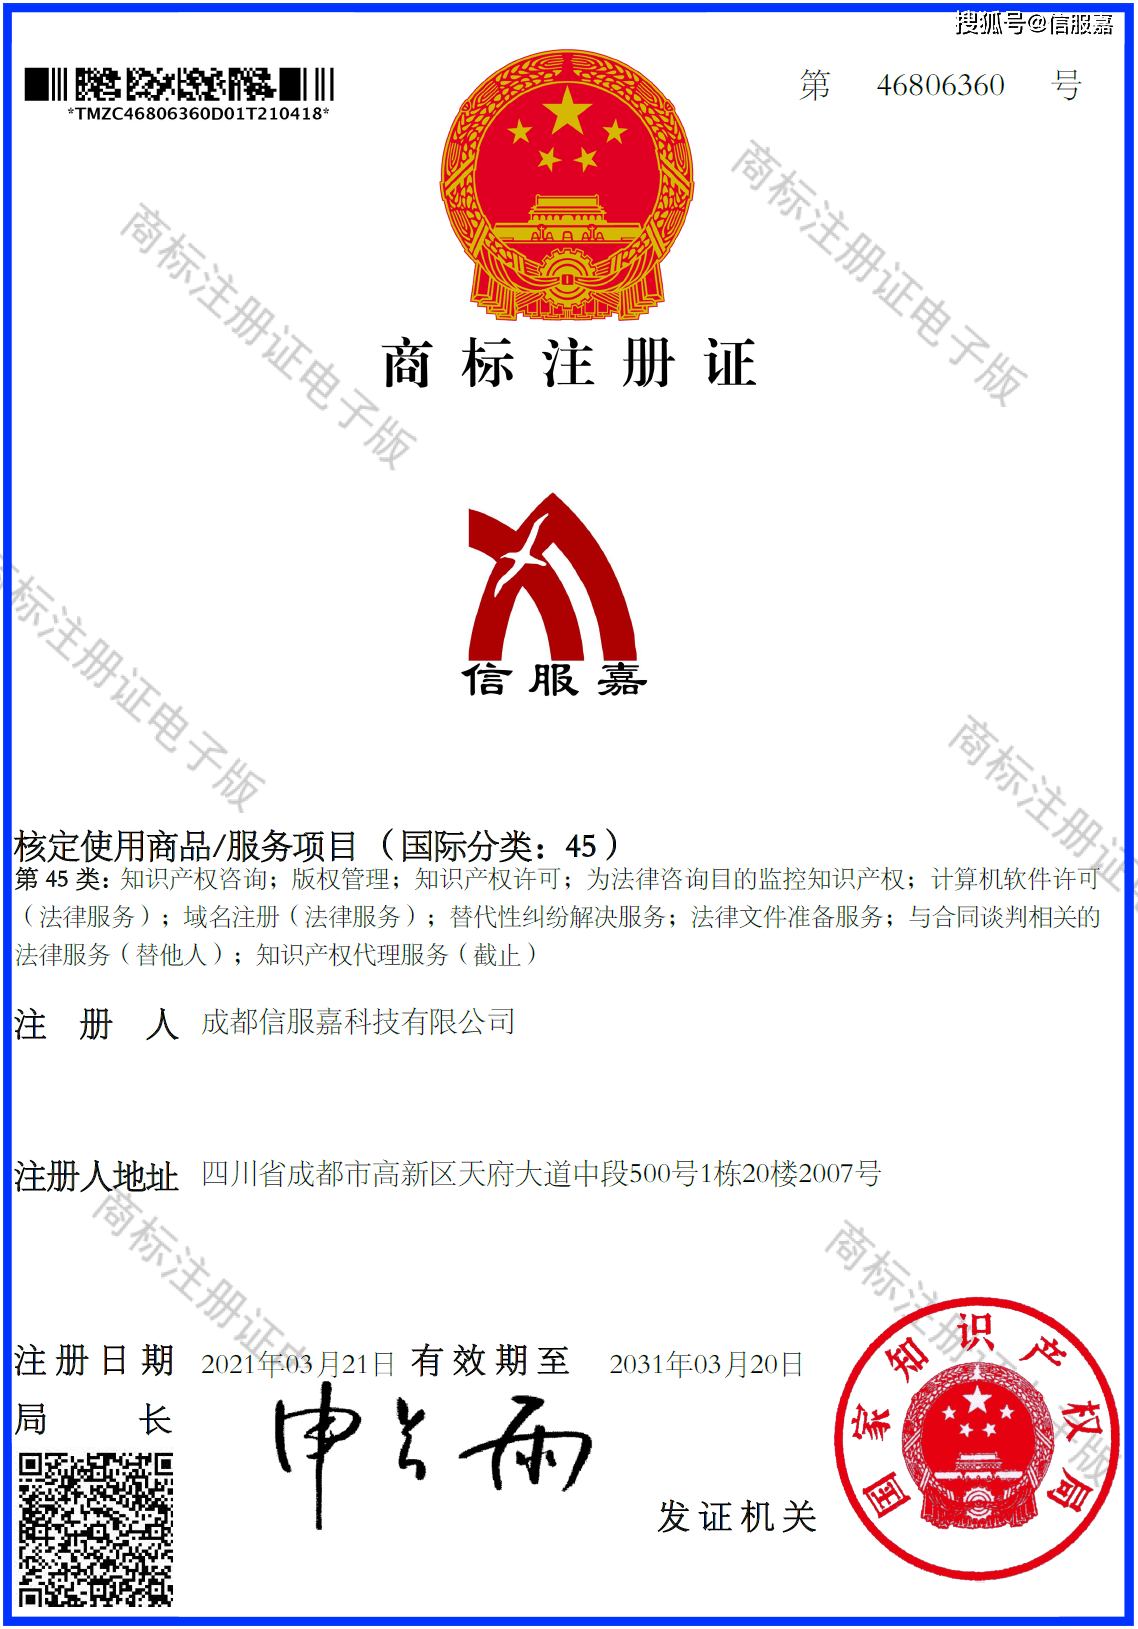 商标注册证电子版(信服嘉)方法一:通过国家知识产权局商标局 中国商标